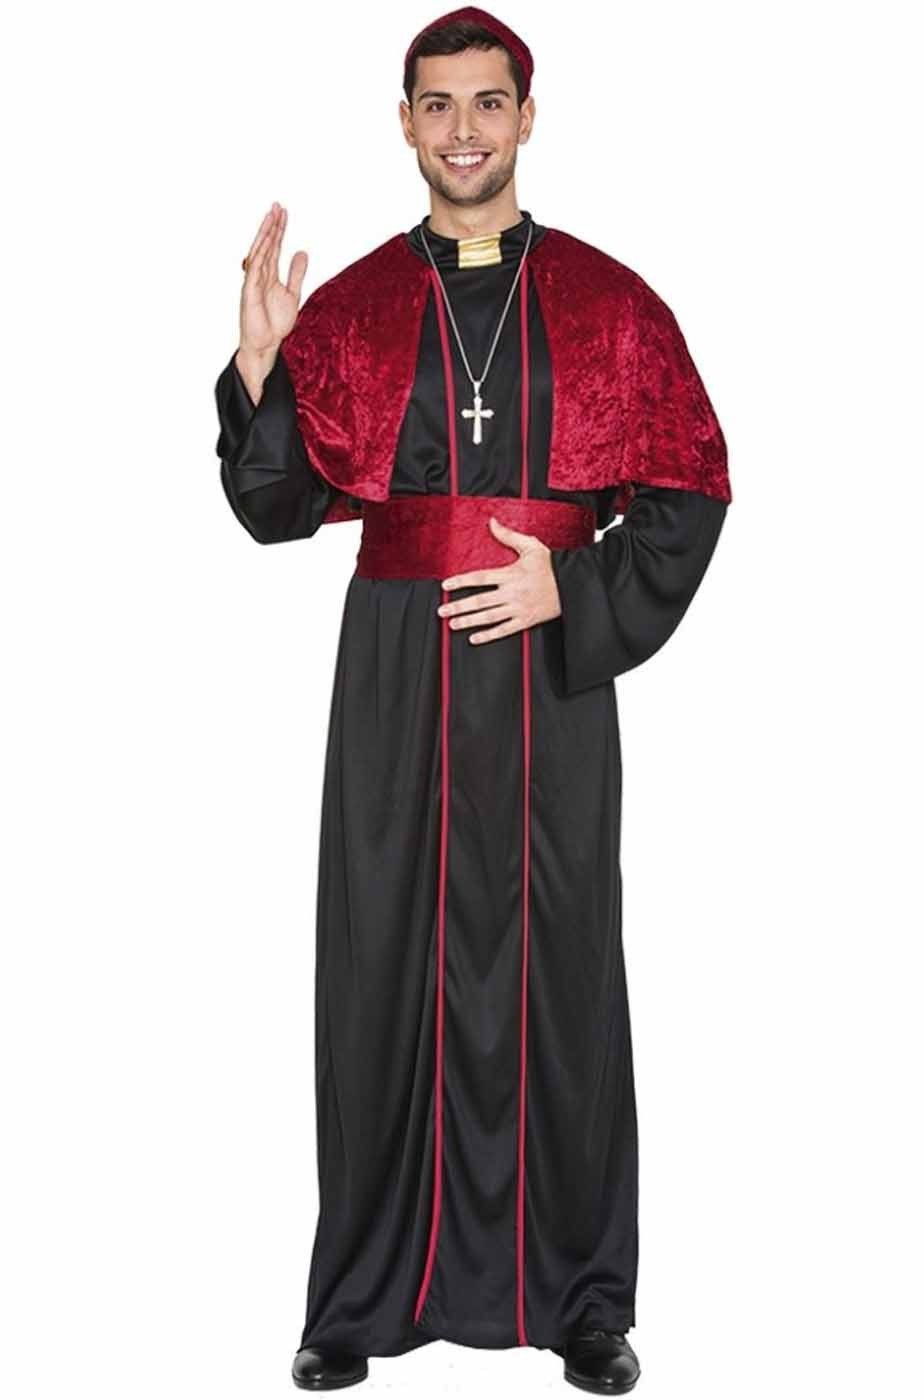 Costume di carnevale adulto da Cardinale con cappello o vescovo